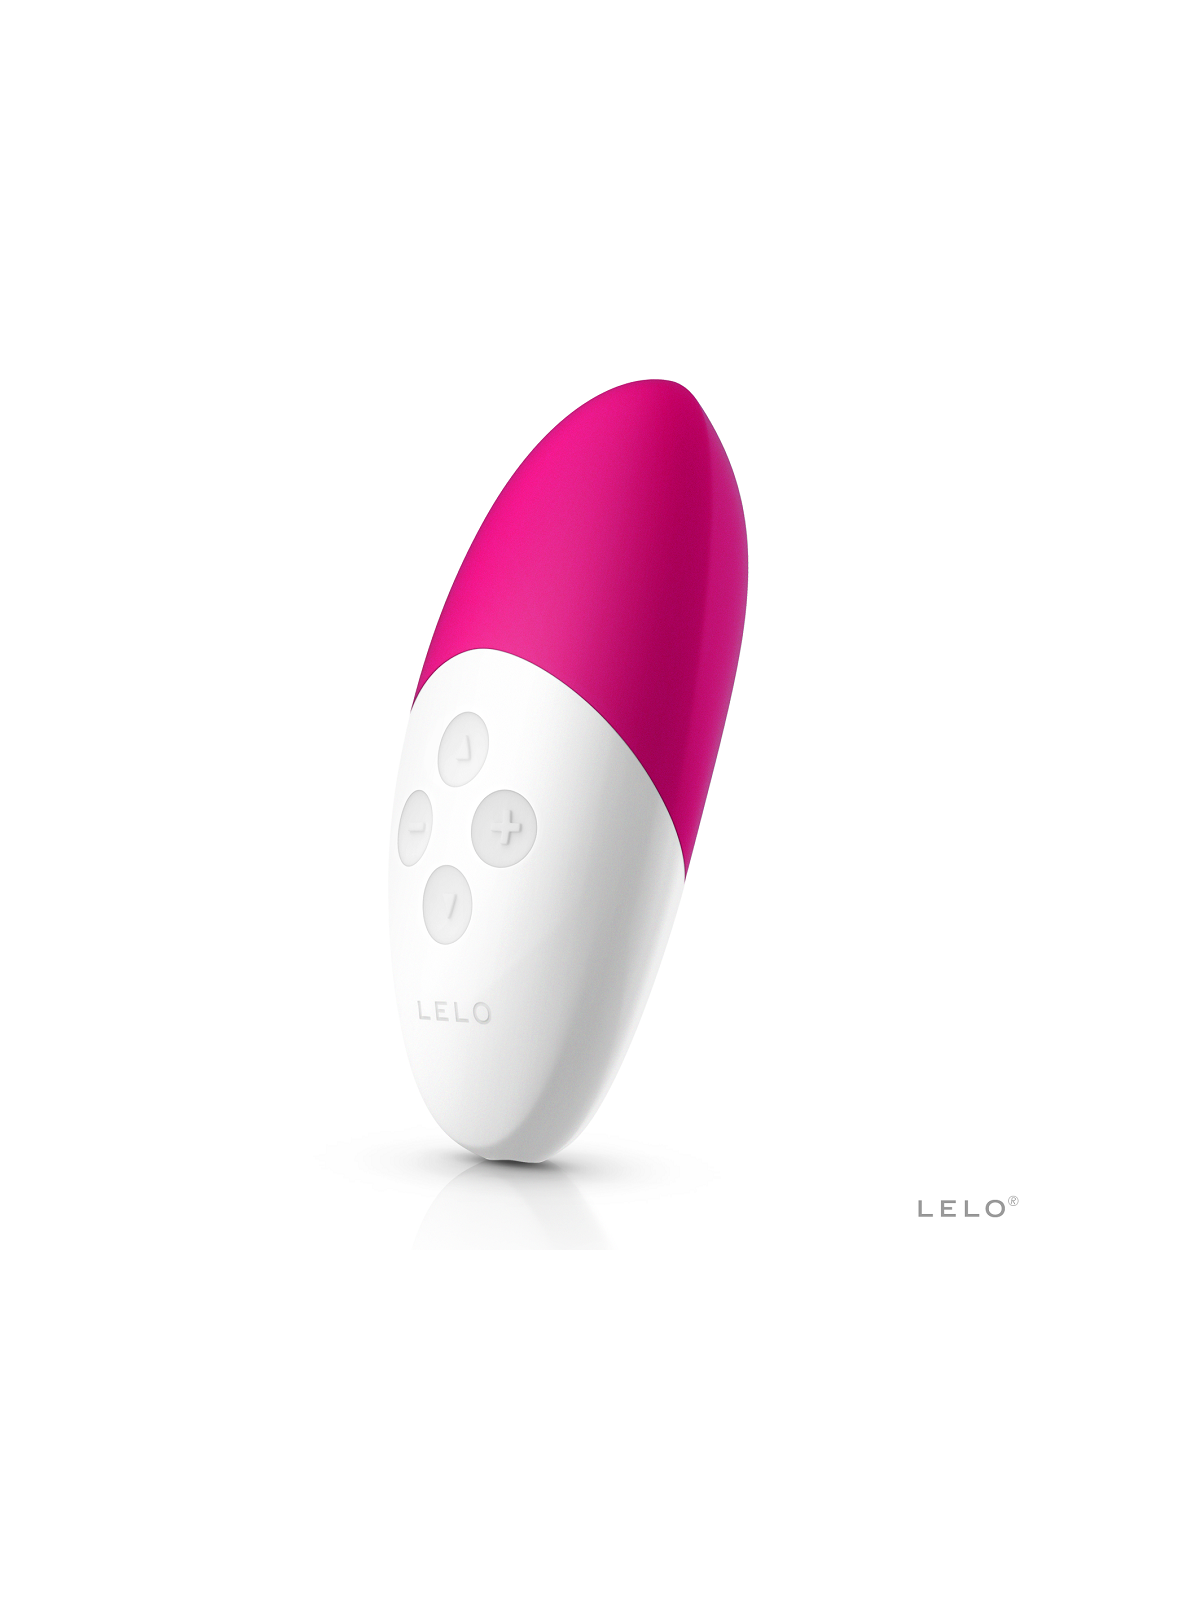 Lelo Siri 2 Music Vibrador - Comprar Estimulador clítoris Lelo - Estimuladores de clítoris (1)